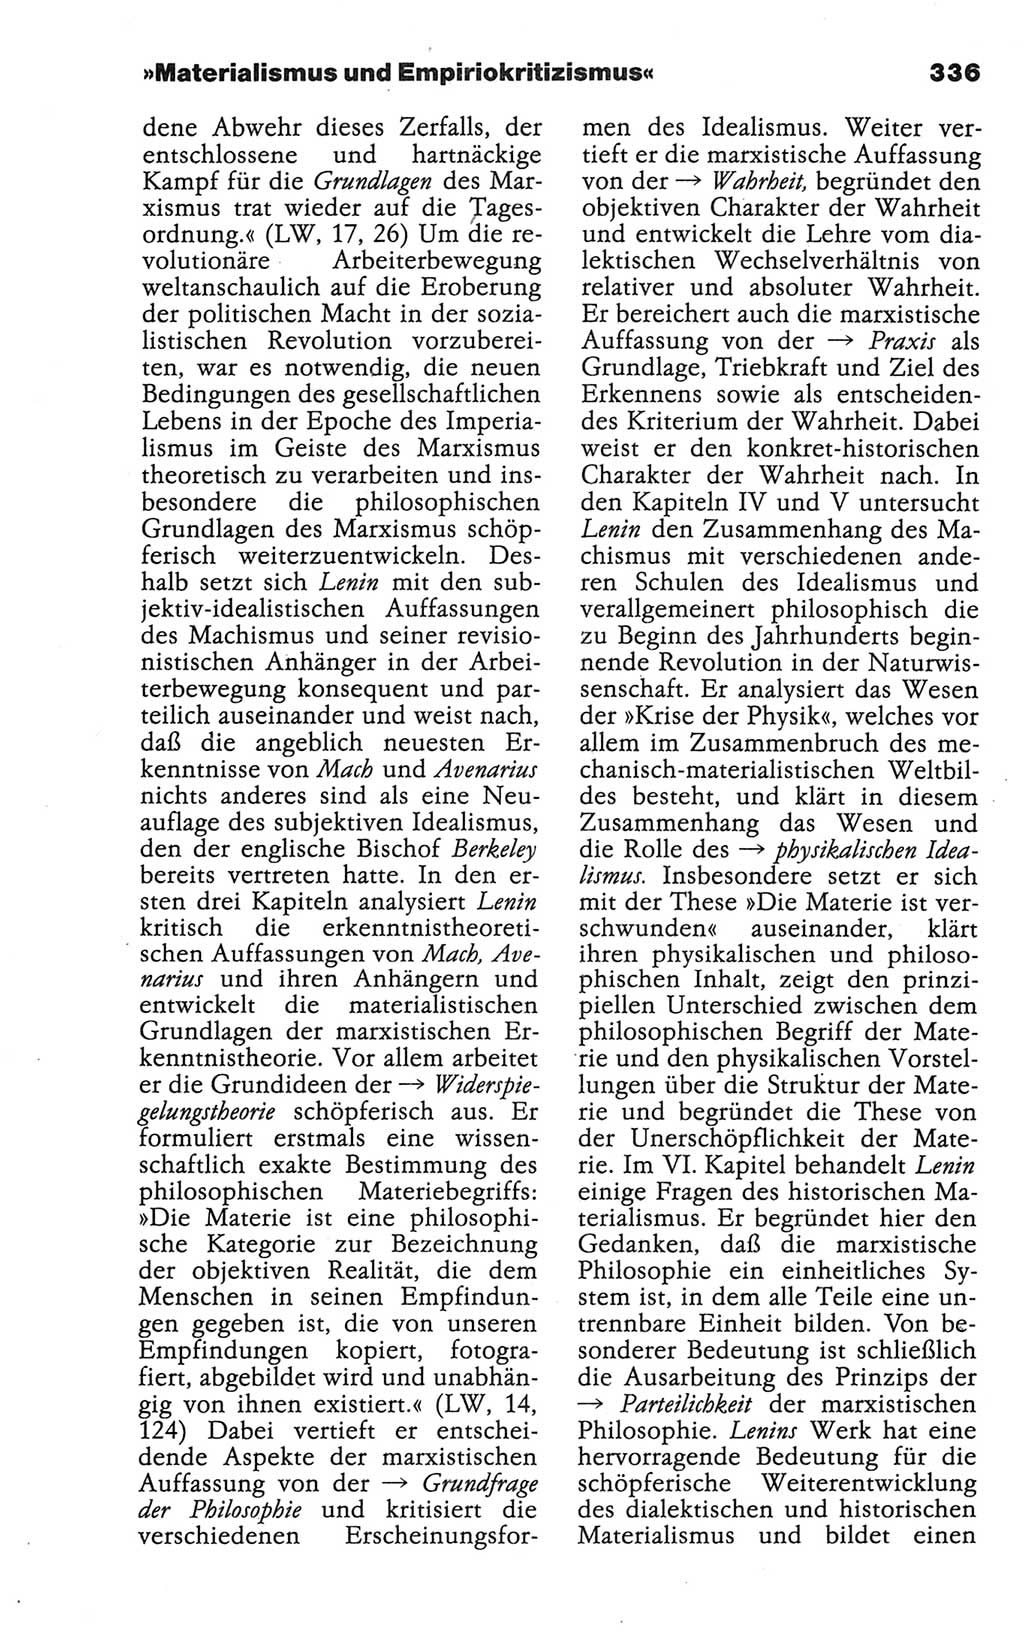 Wörterbuch der marxistisch-leninistischen Philosophie [Deutsche Demokratische Republik (DDR)] 1986, Seite 336 (Wb. ML Phil. DDR 1986, S. 336)